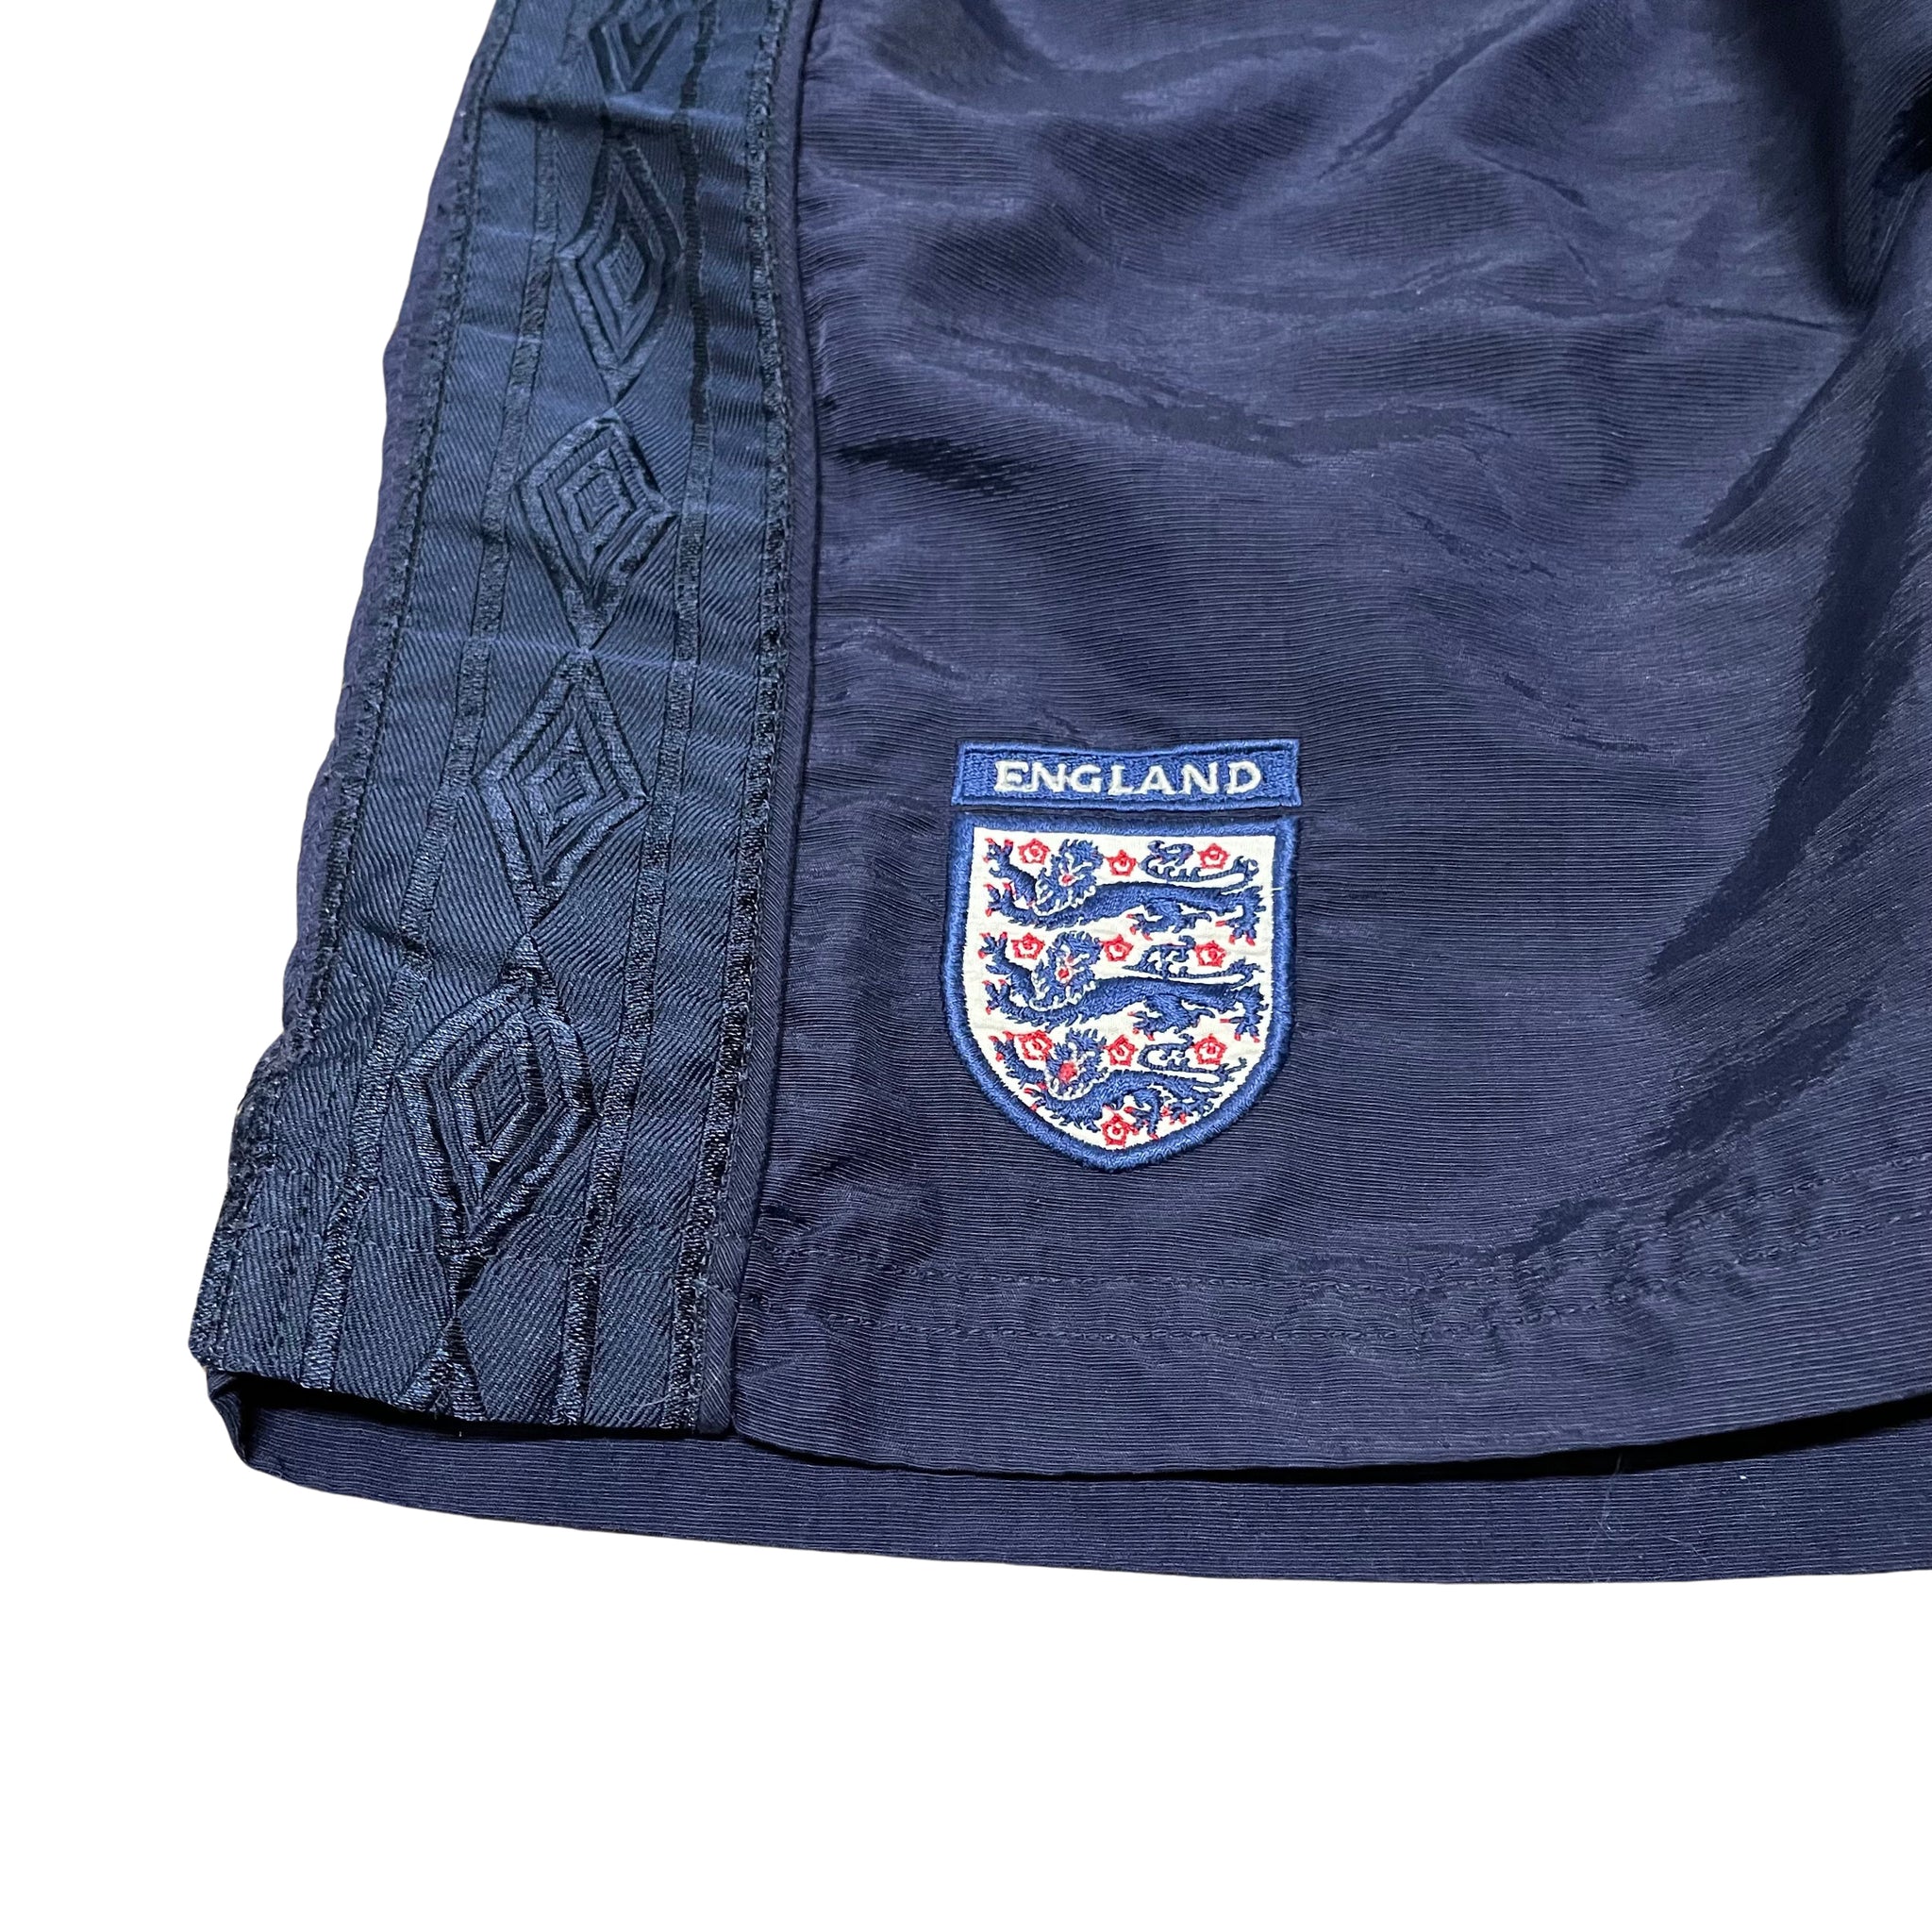 Umbro England Shorts - L